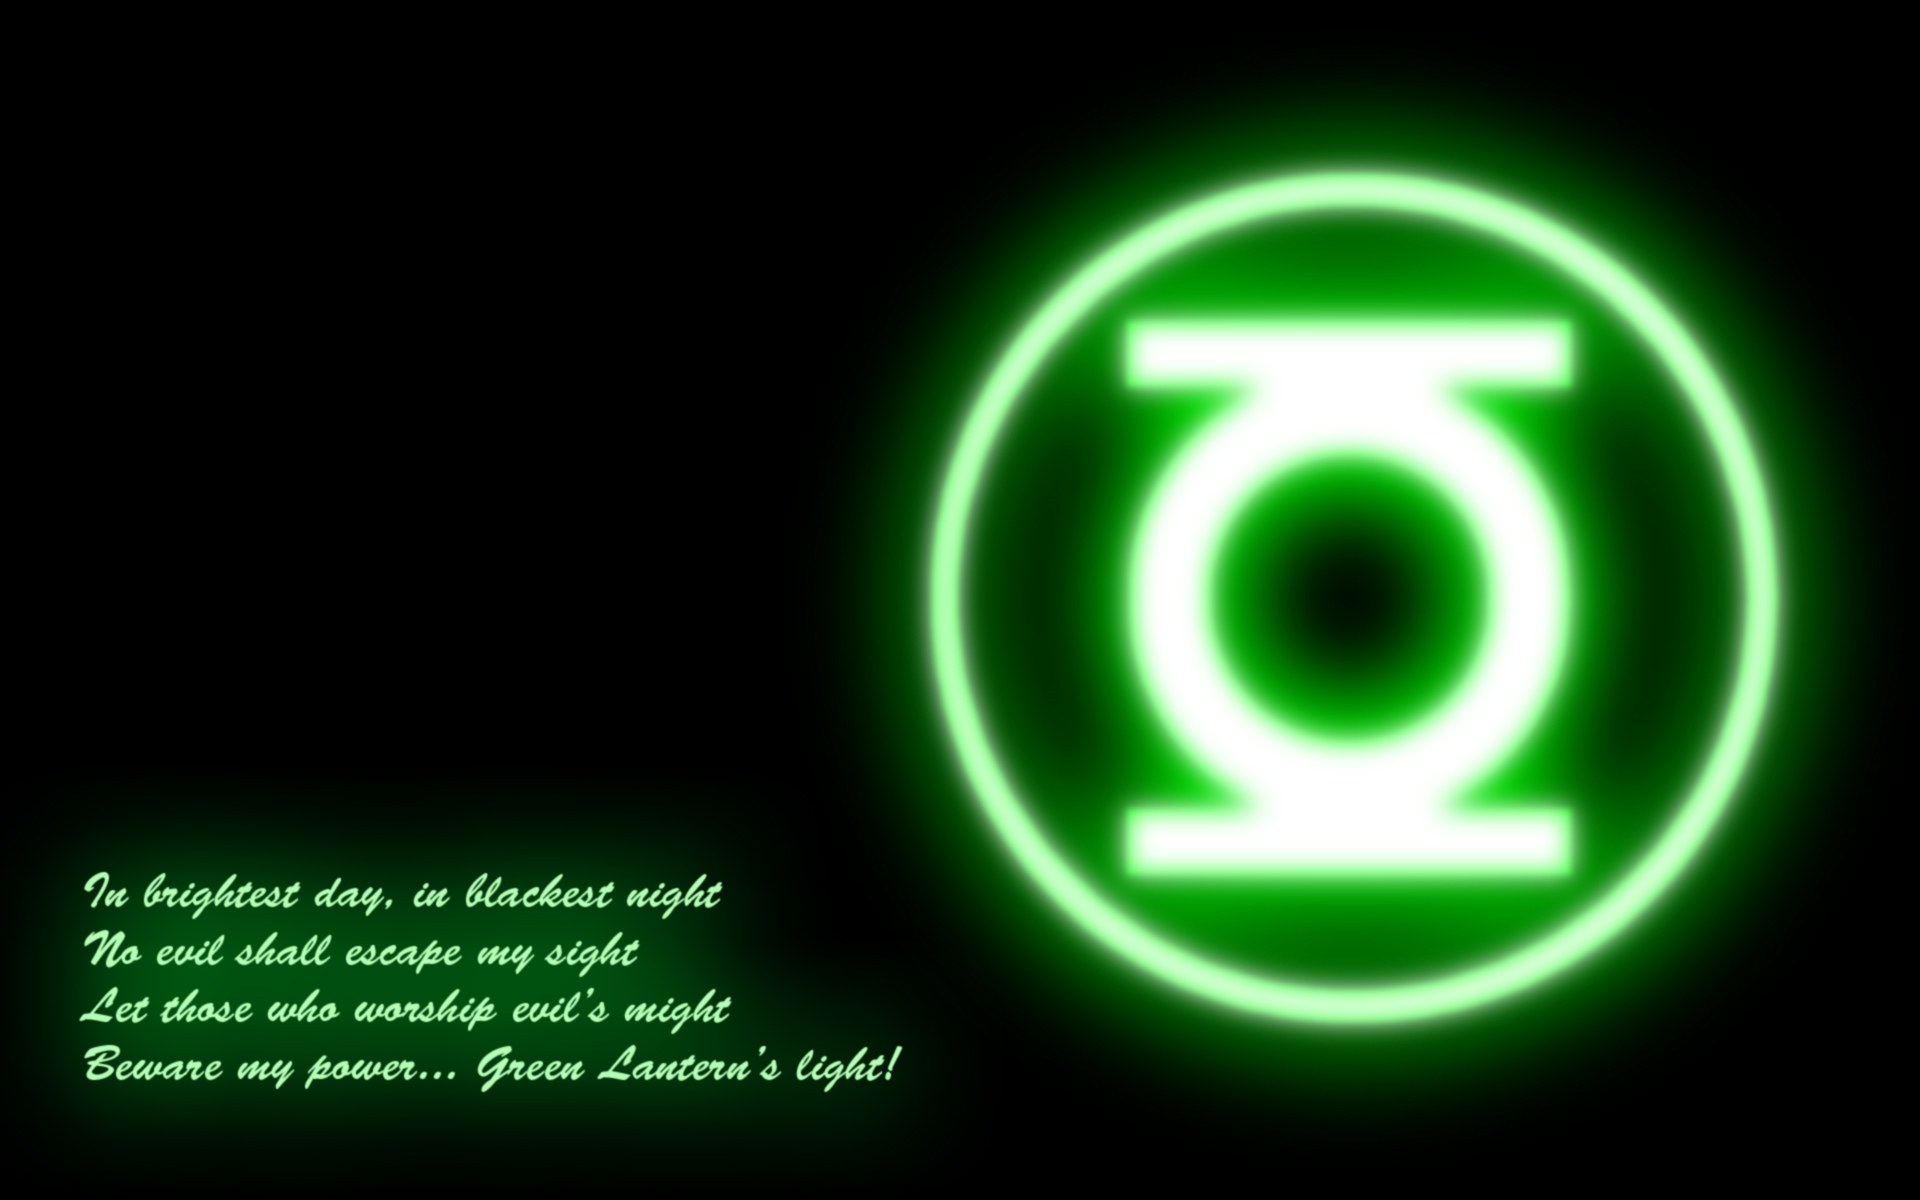 green lantern oath wallpaper iphone